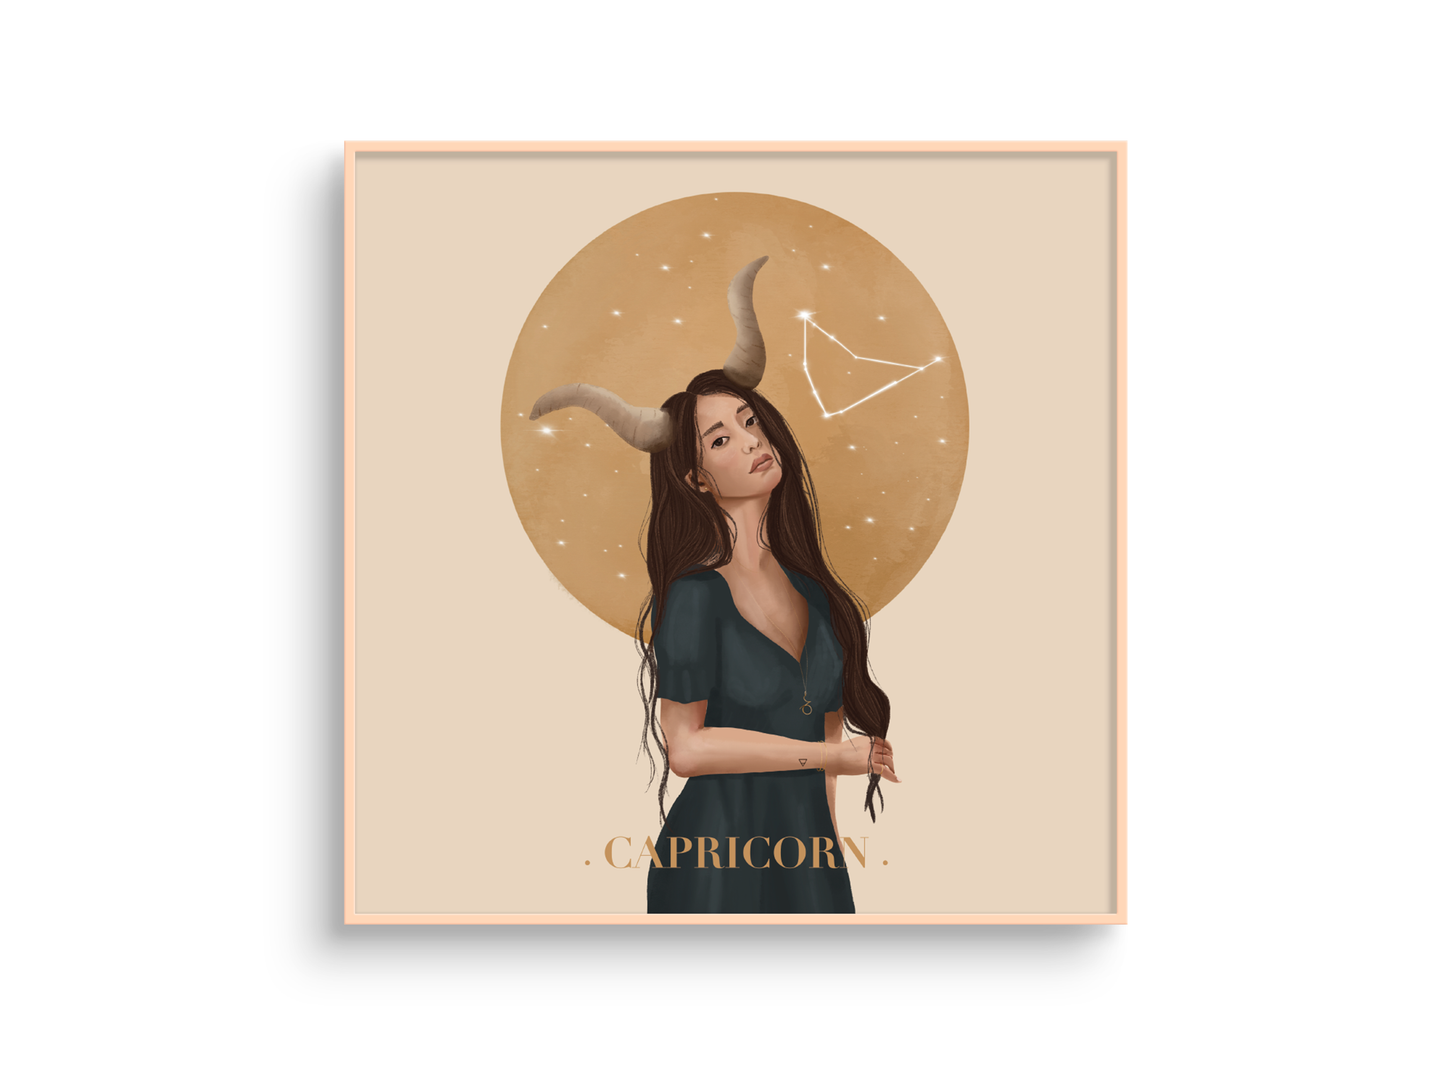 capricorn zodiac illustration print